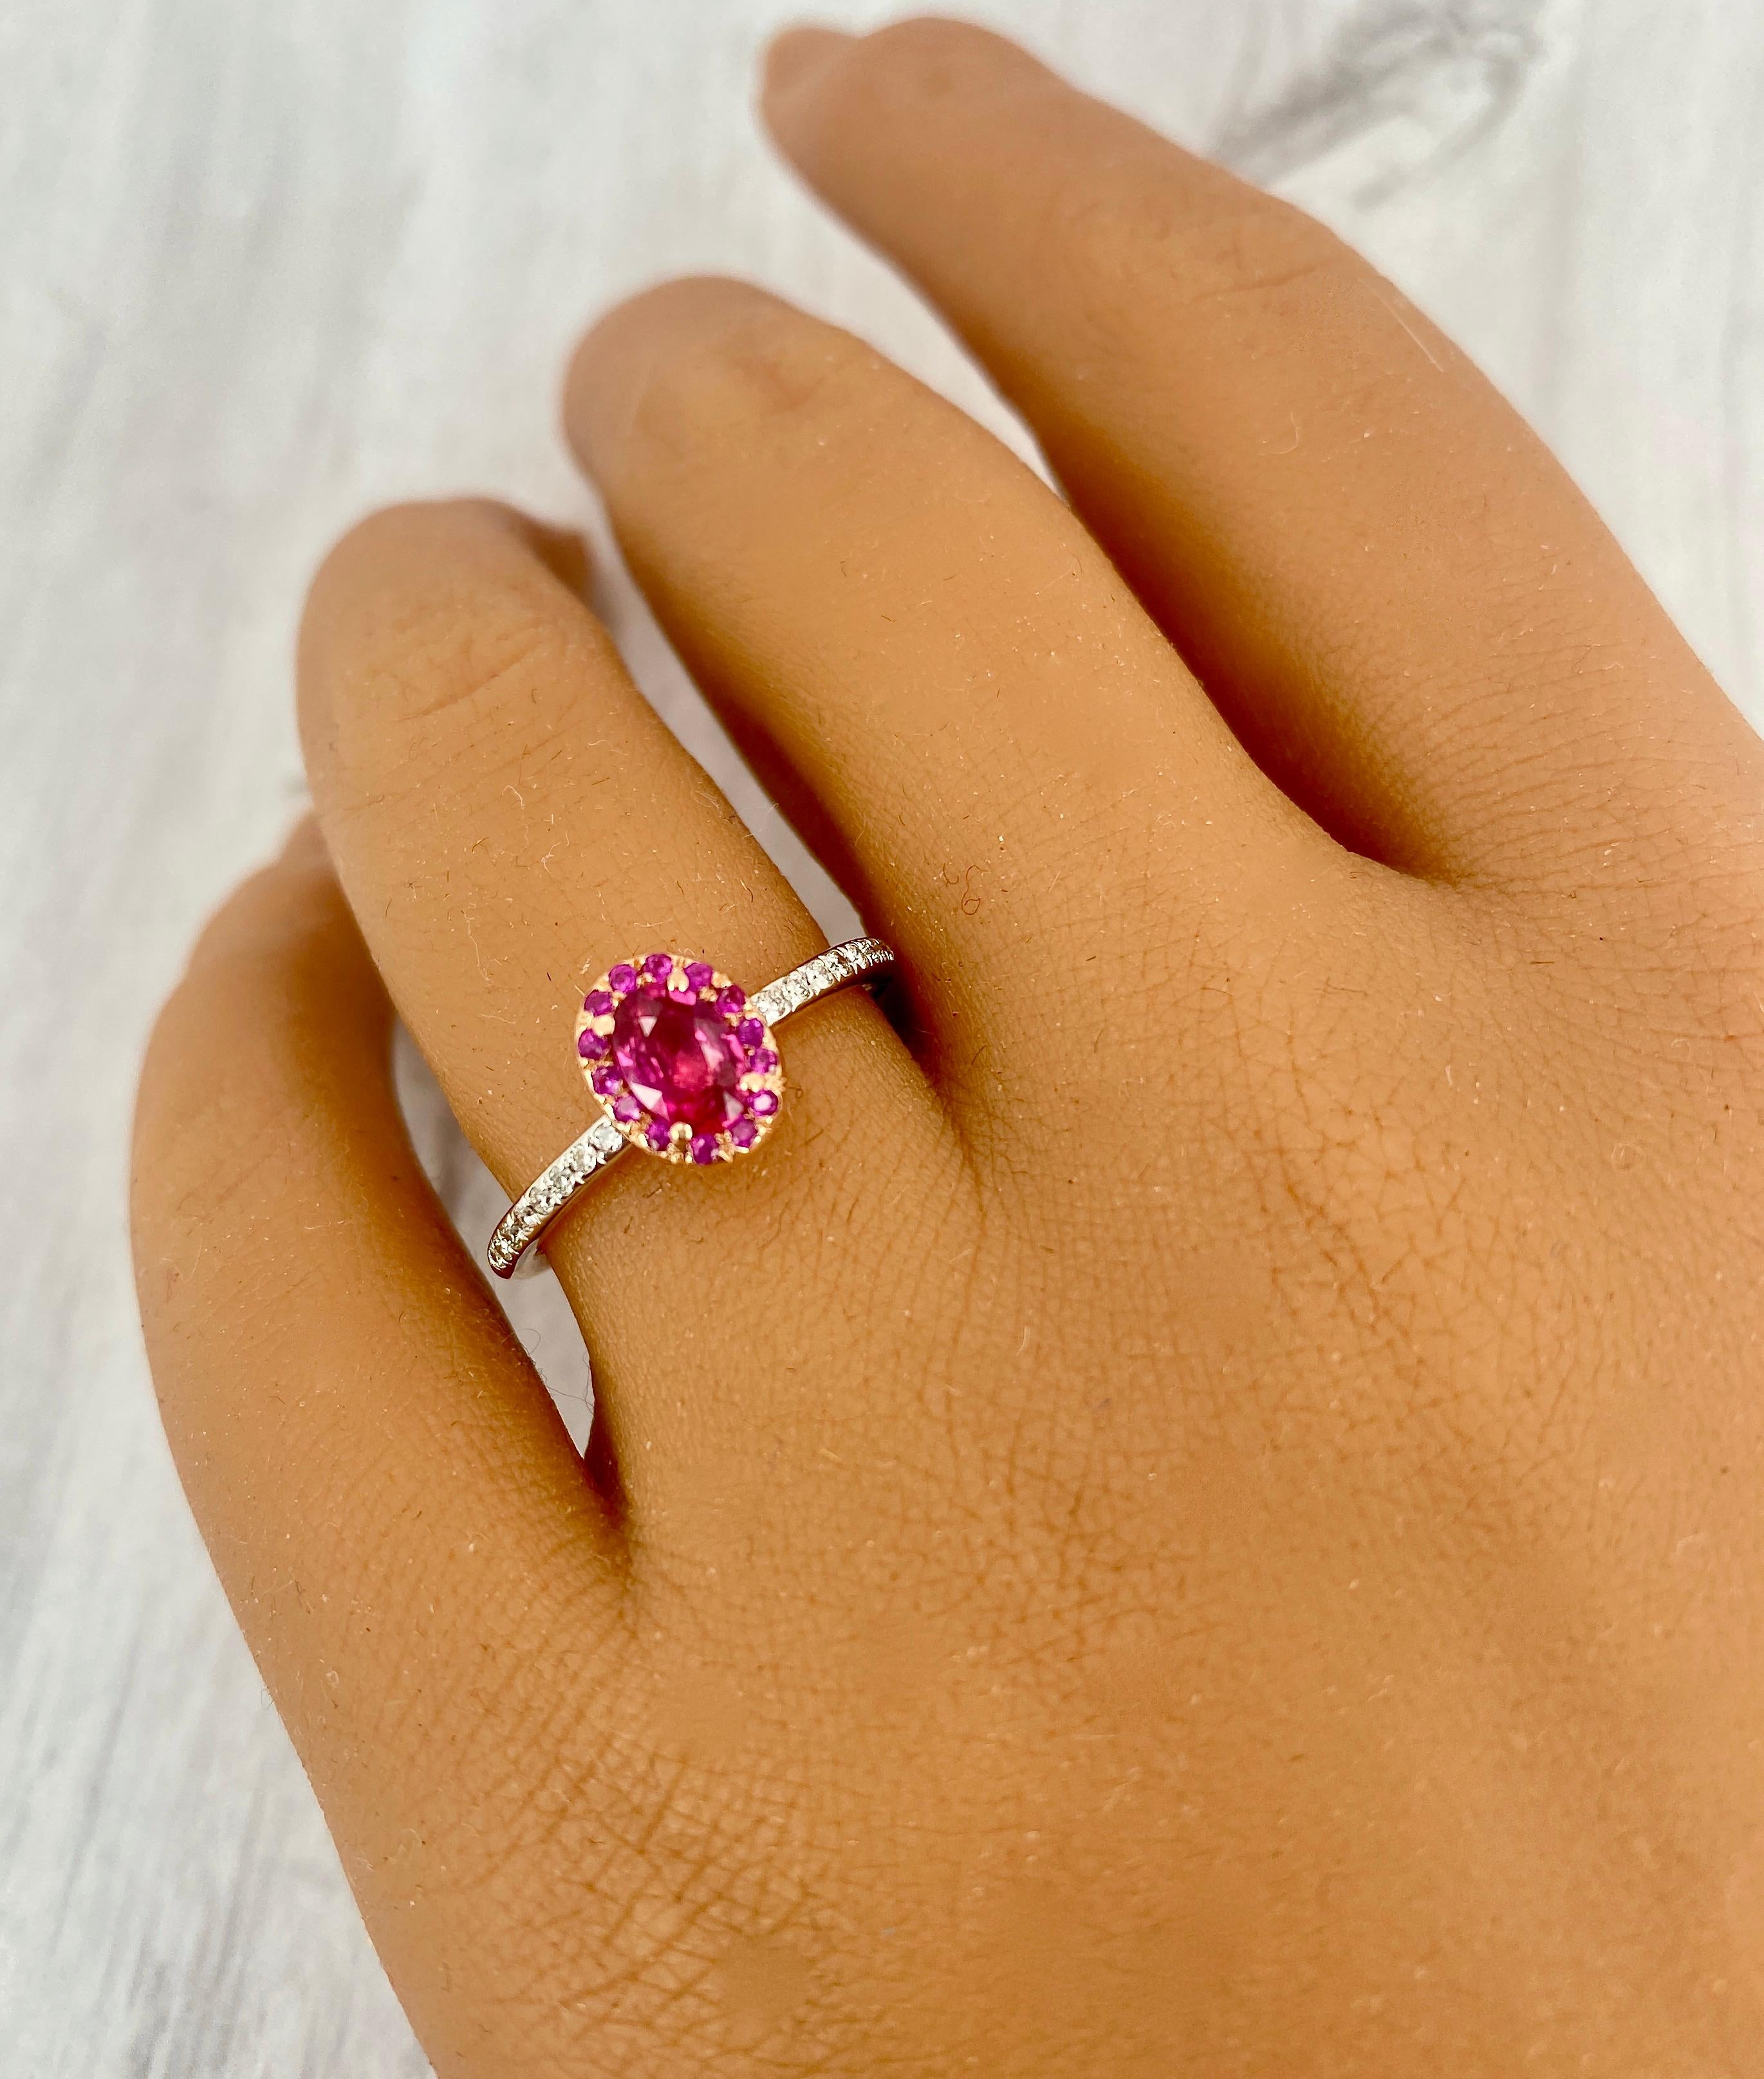 Il s'agit d'une magnifique bague en rubis et diamants, avec un halo unique en rubis ! Il est empilable, à la mode et abordable ! Vous obtenez un petit look coloré et élégant en une seule bague ! Toutes les pierres sont 100% naturelles et l'or est